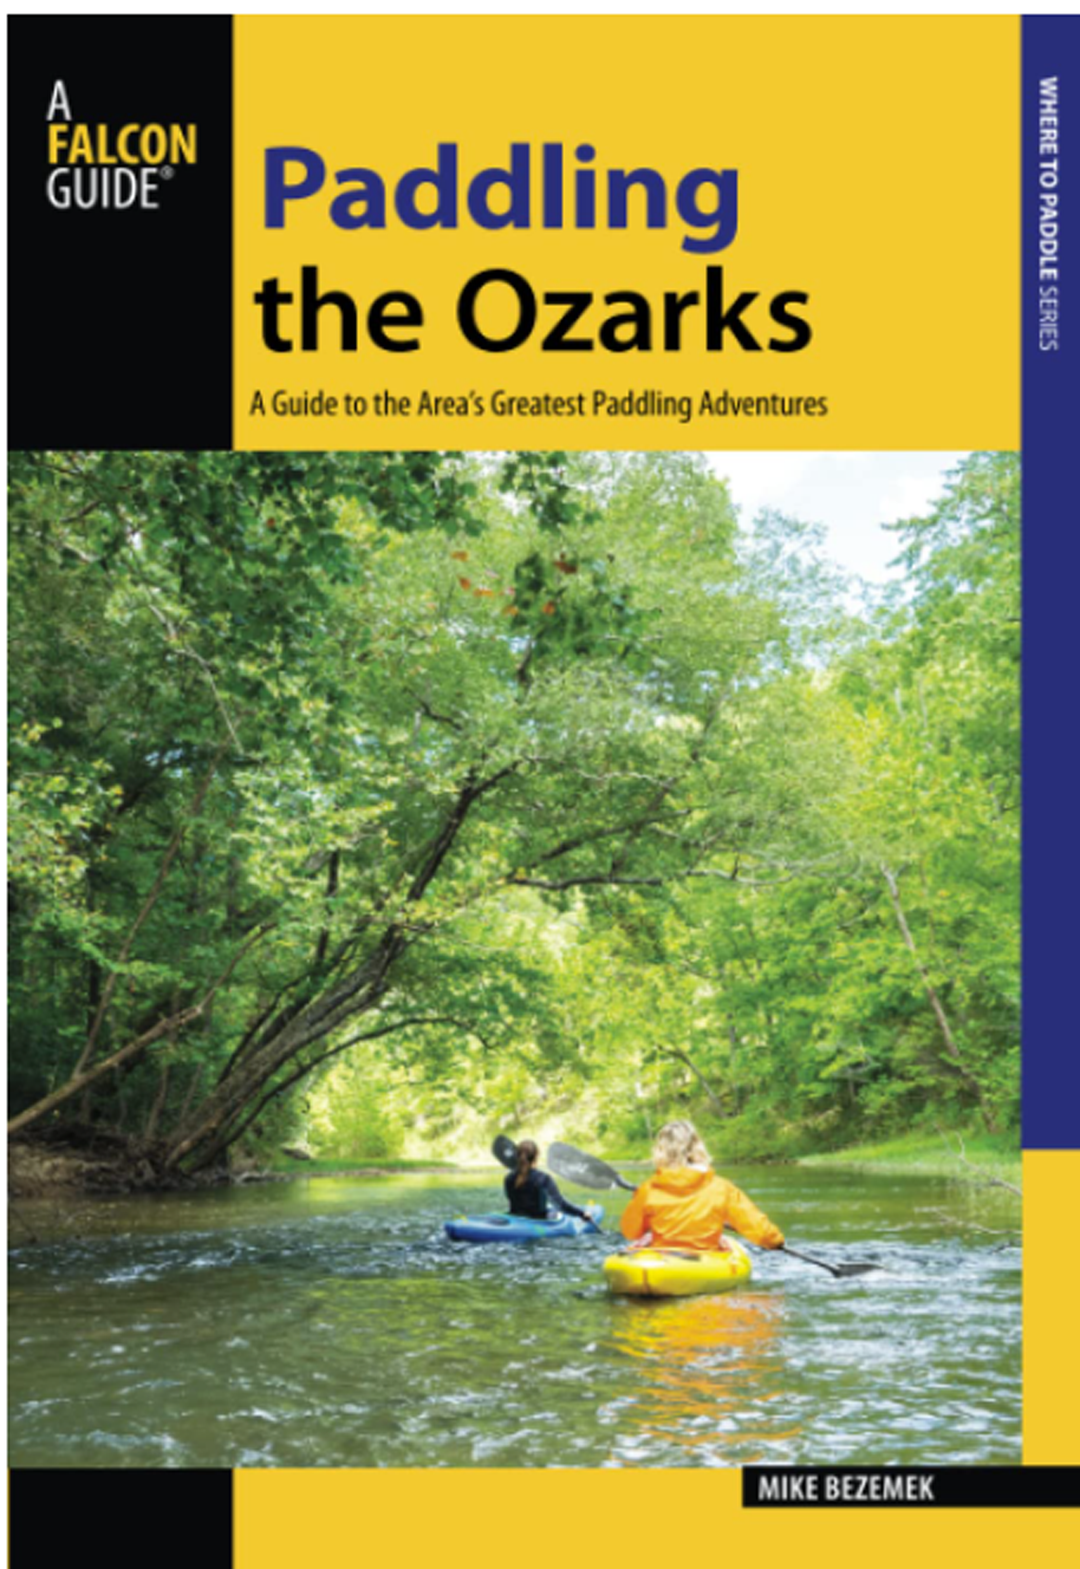 Paddling the Ozarks by Mike Bezemek